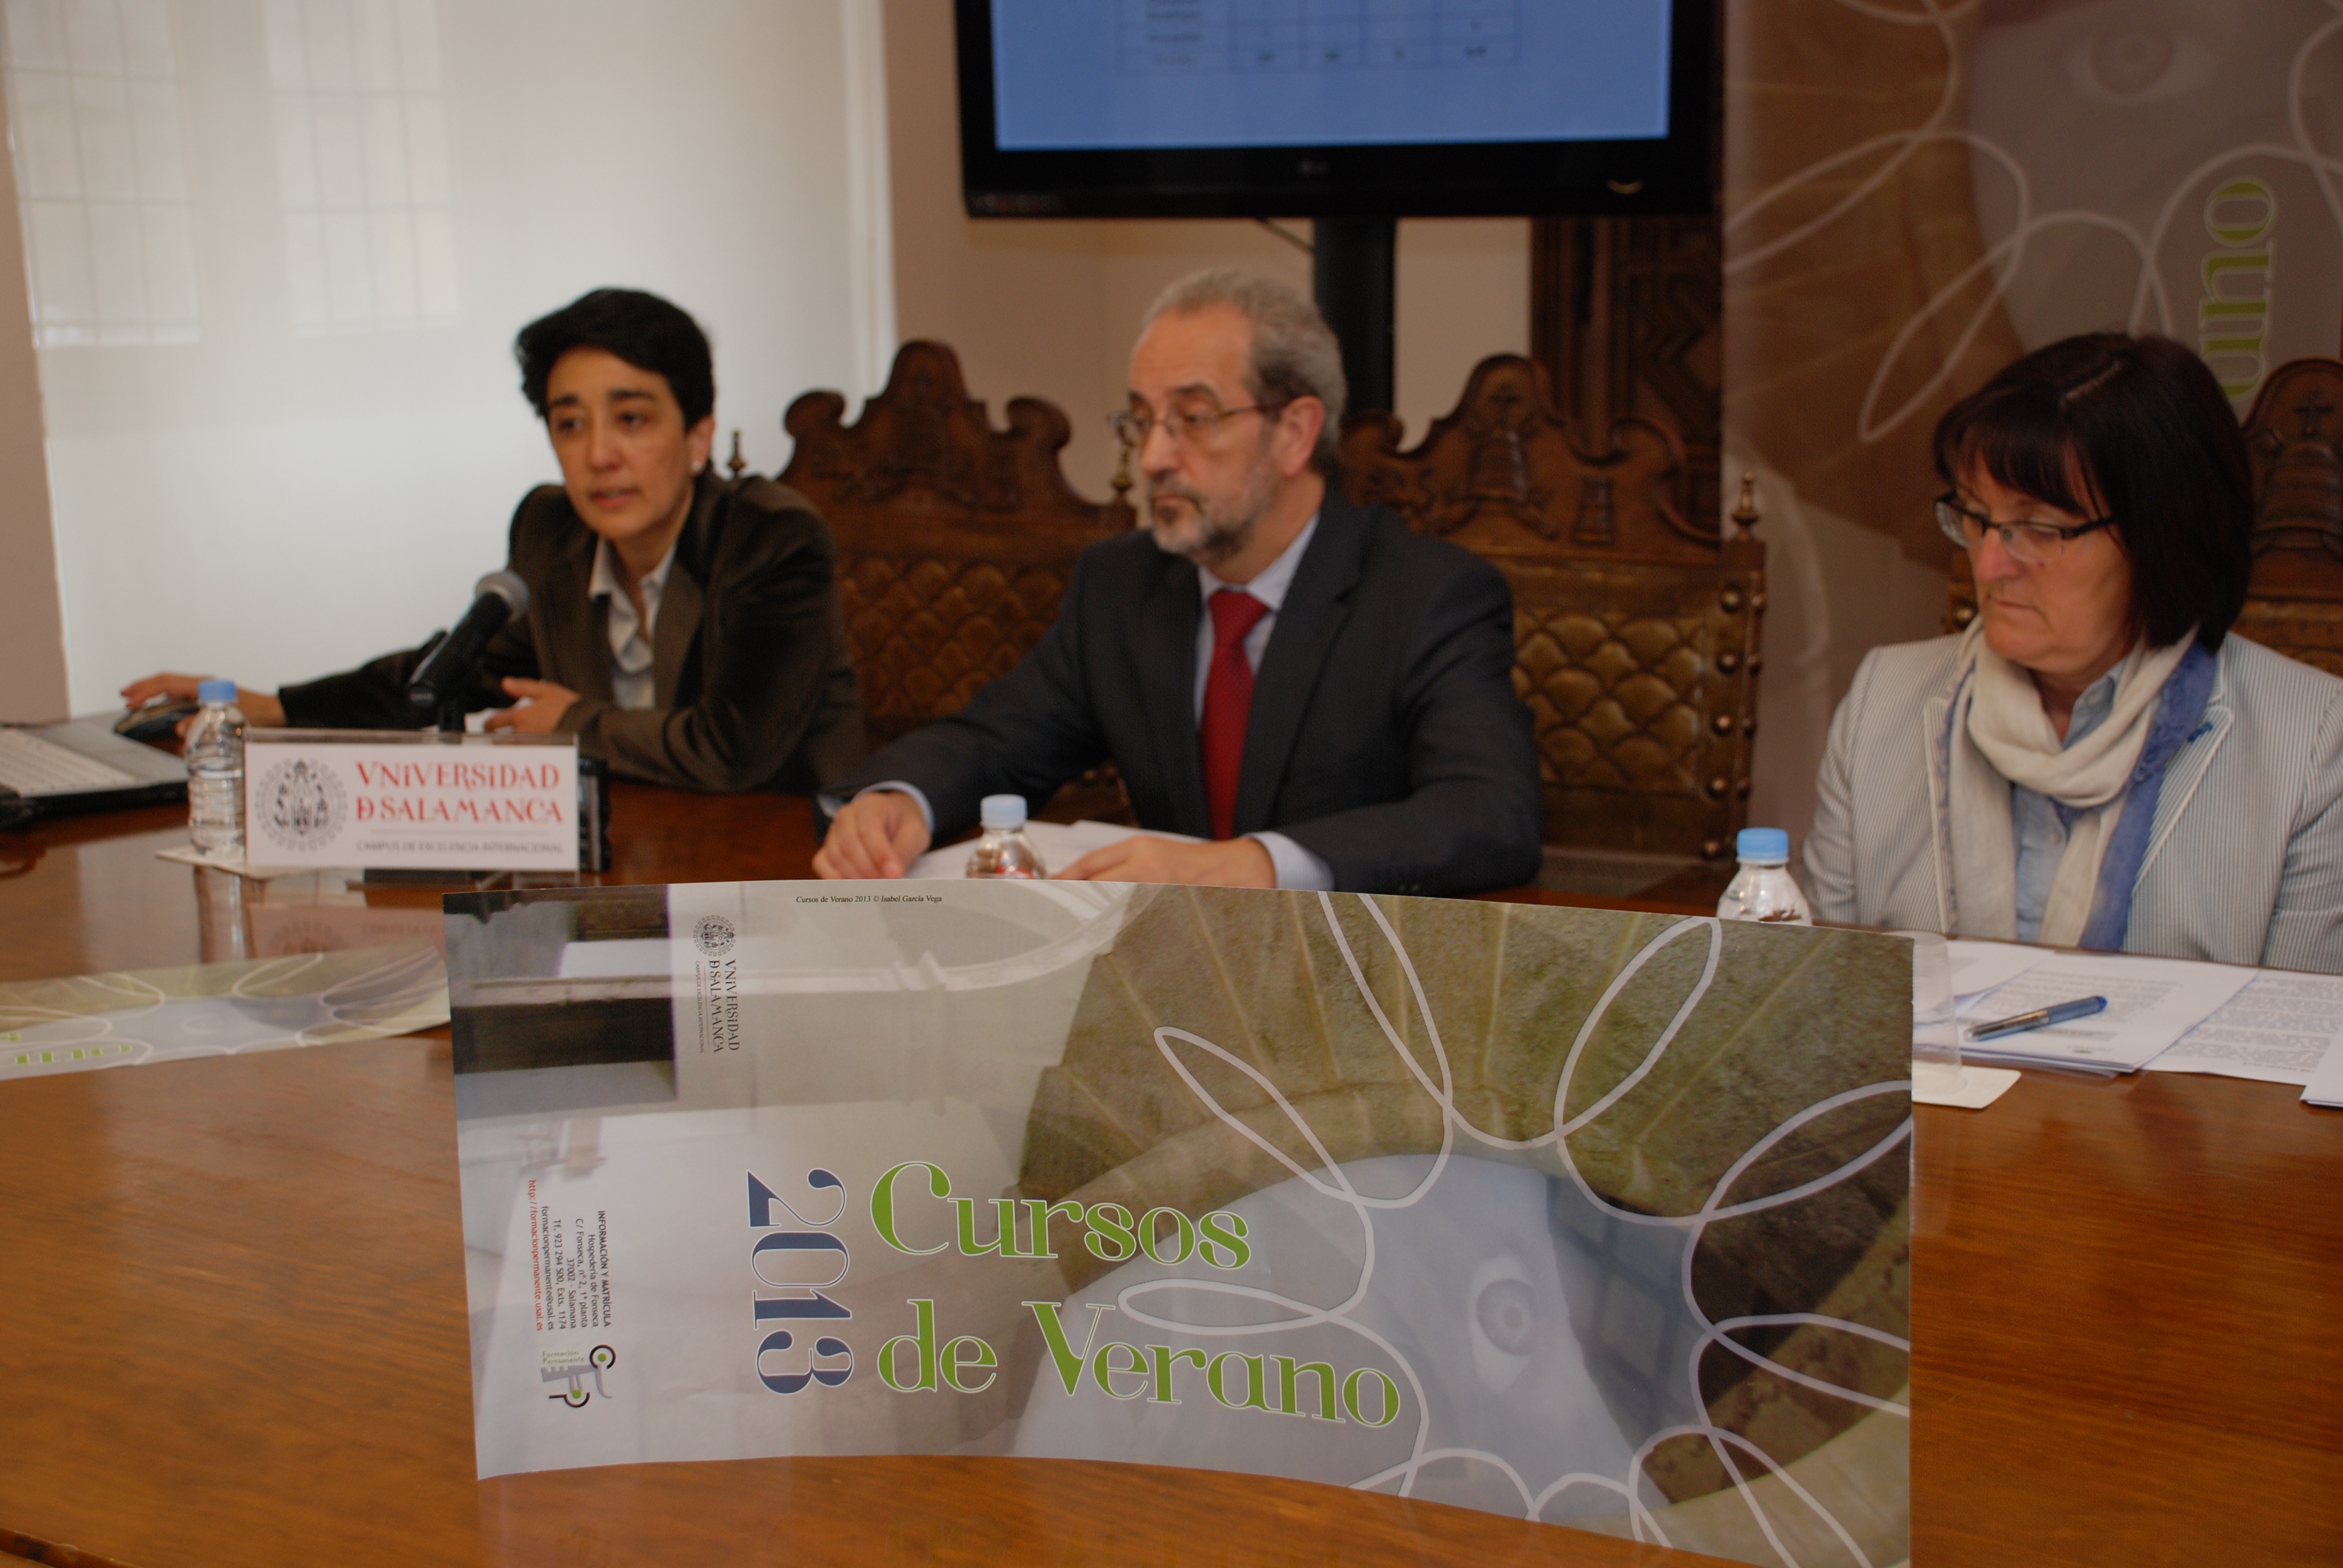 El rector presenta los Cursos de Verano de 2013 de la Universidad de Salamanca